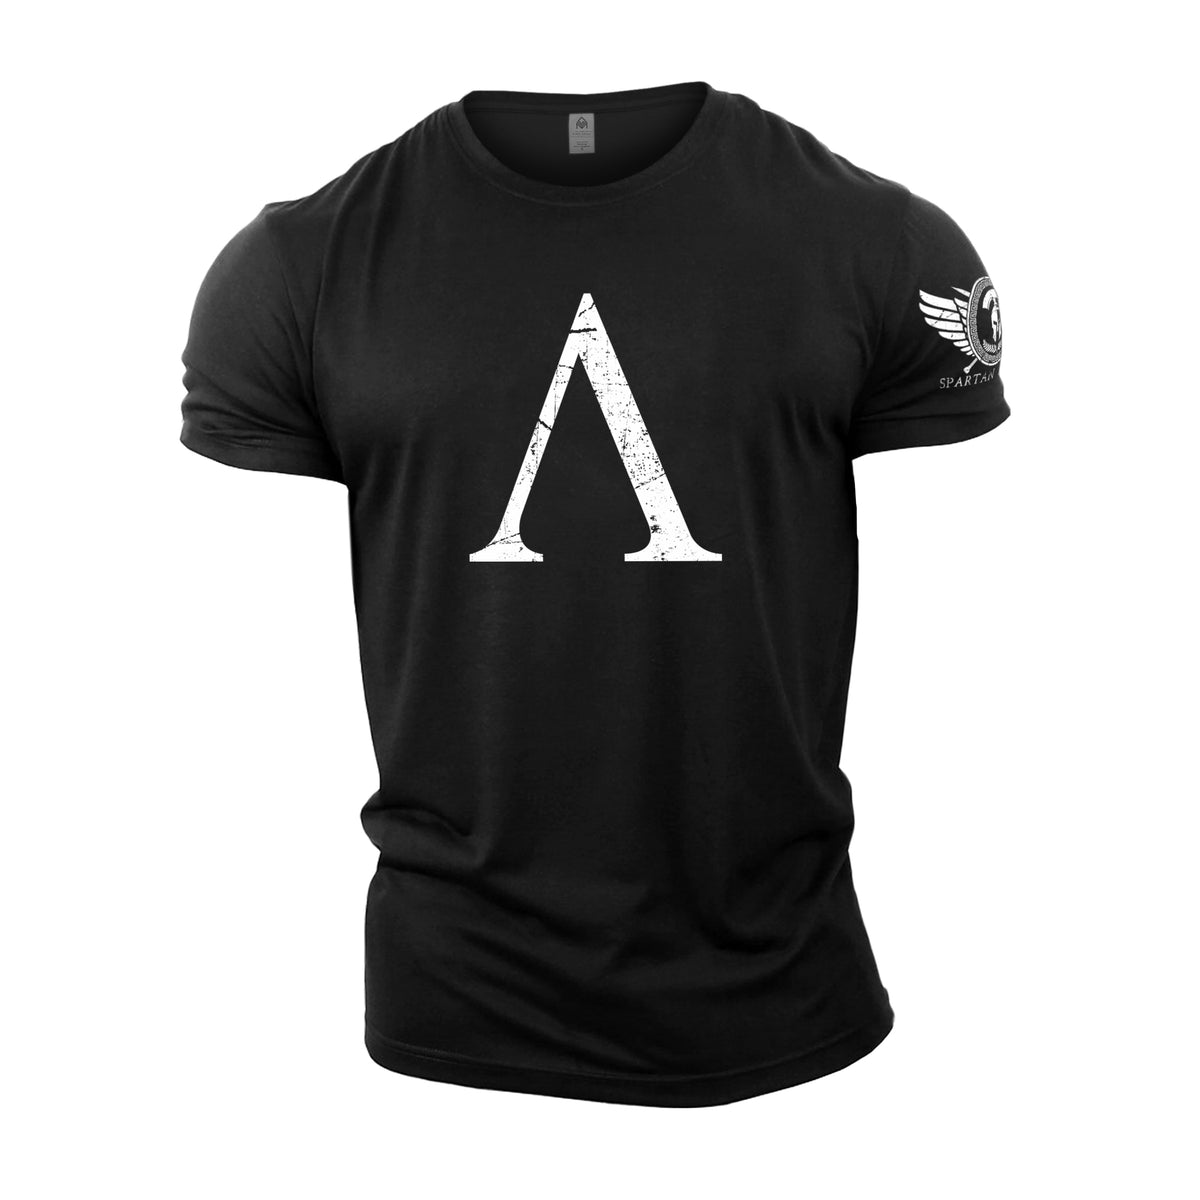 Spartan Symbol - Spartan Forged - Gym T-Shirt